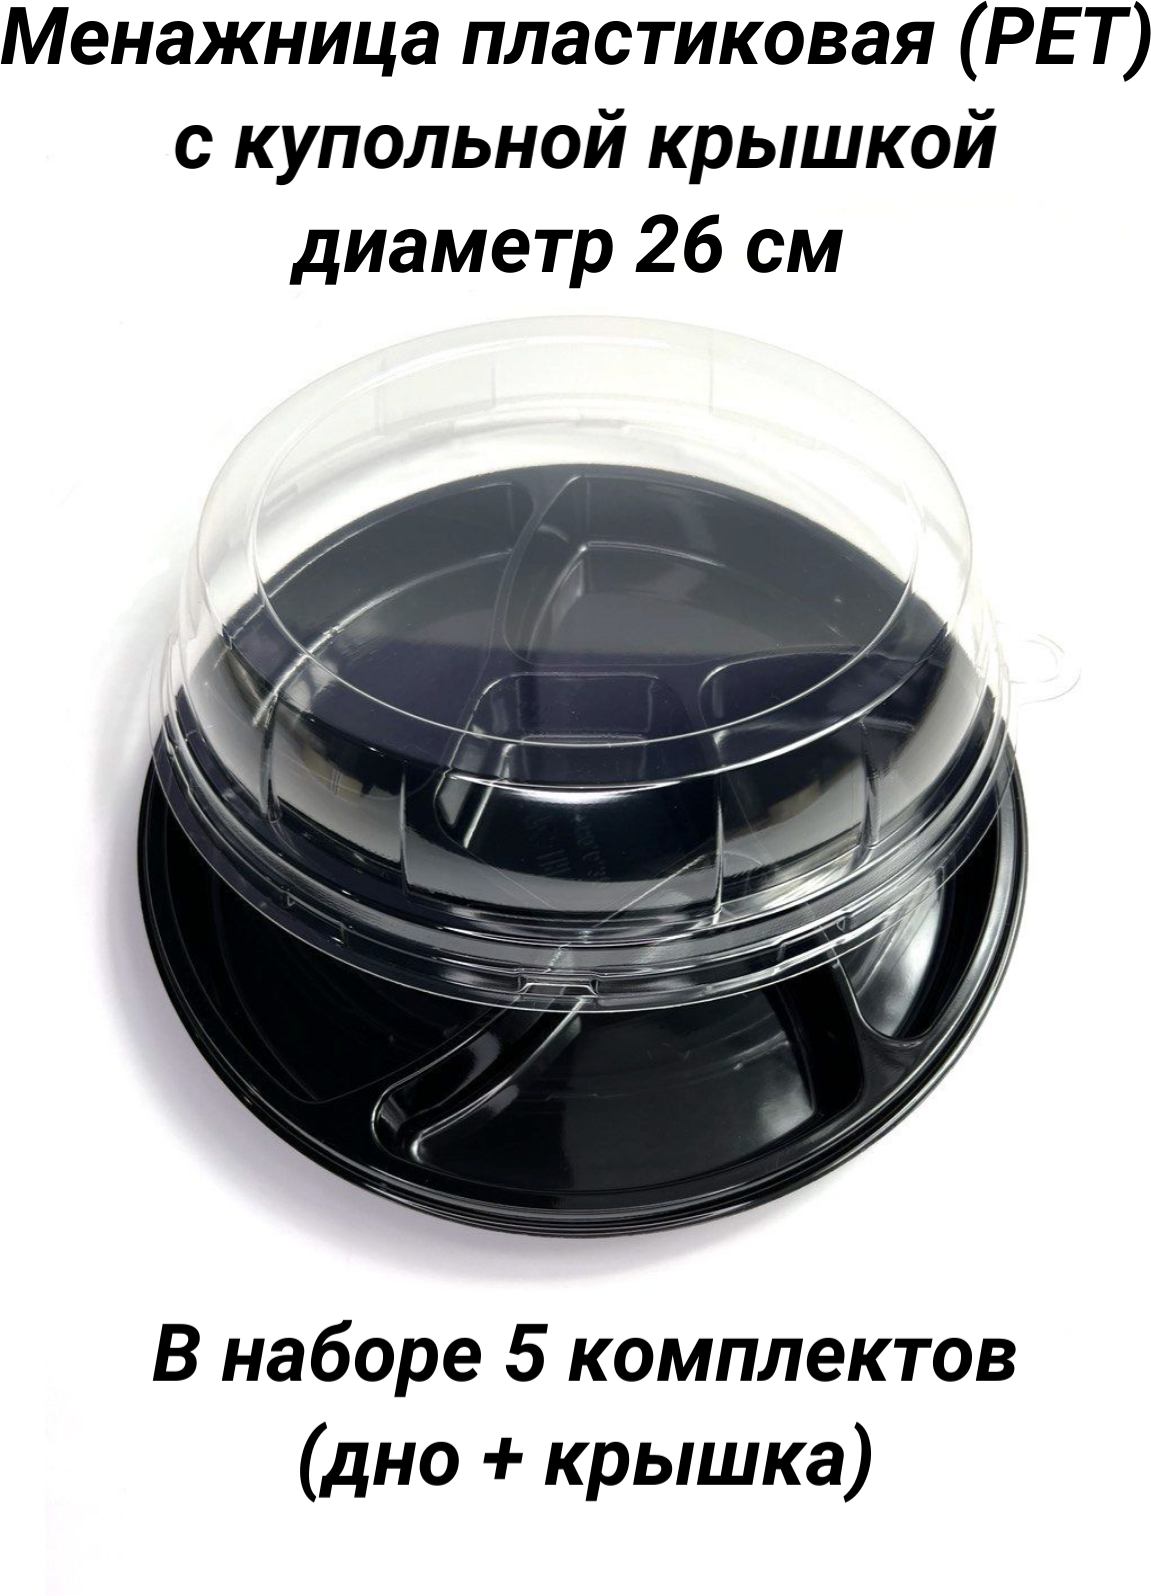 Менажница (блюдо) PLATTER с крышкой купольной, 6 секций, одноразовая, PET (ПЭТ) пластик, диаметр 26 см, 5 шт. (для закусок, сервировки, фуршета, кейтеринга)